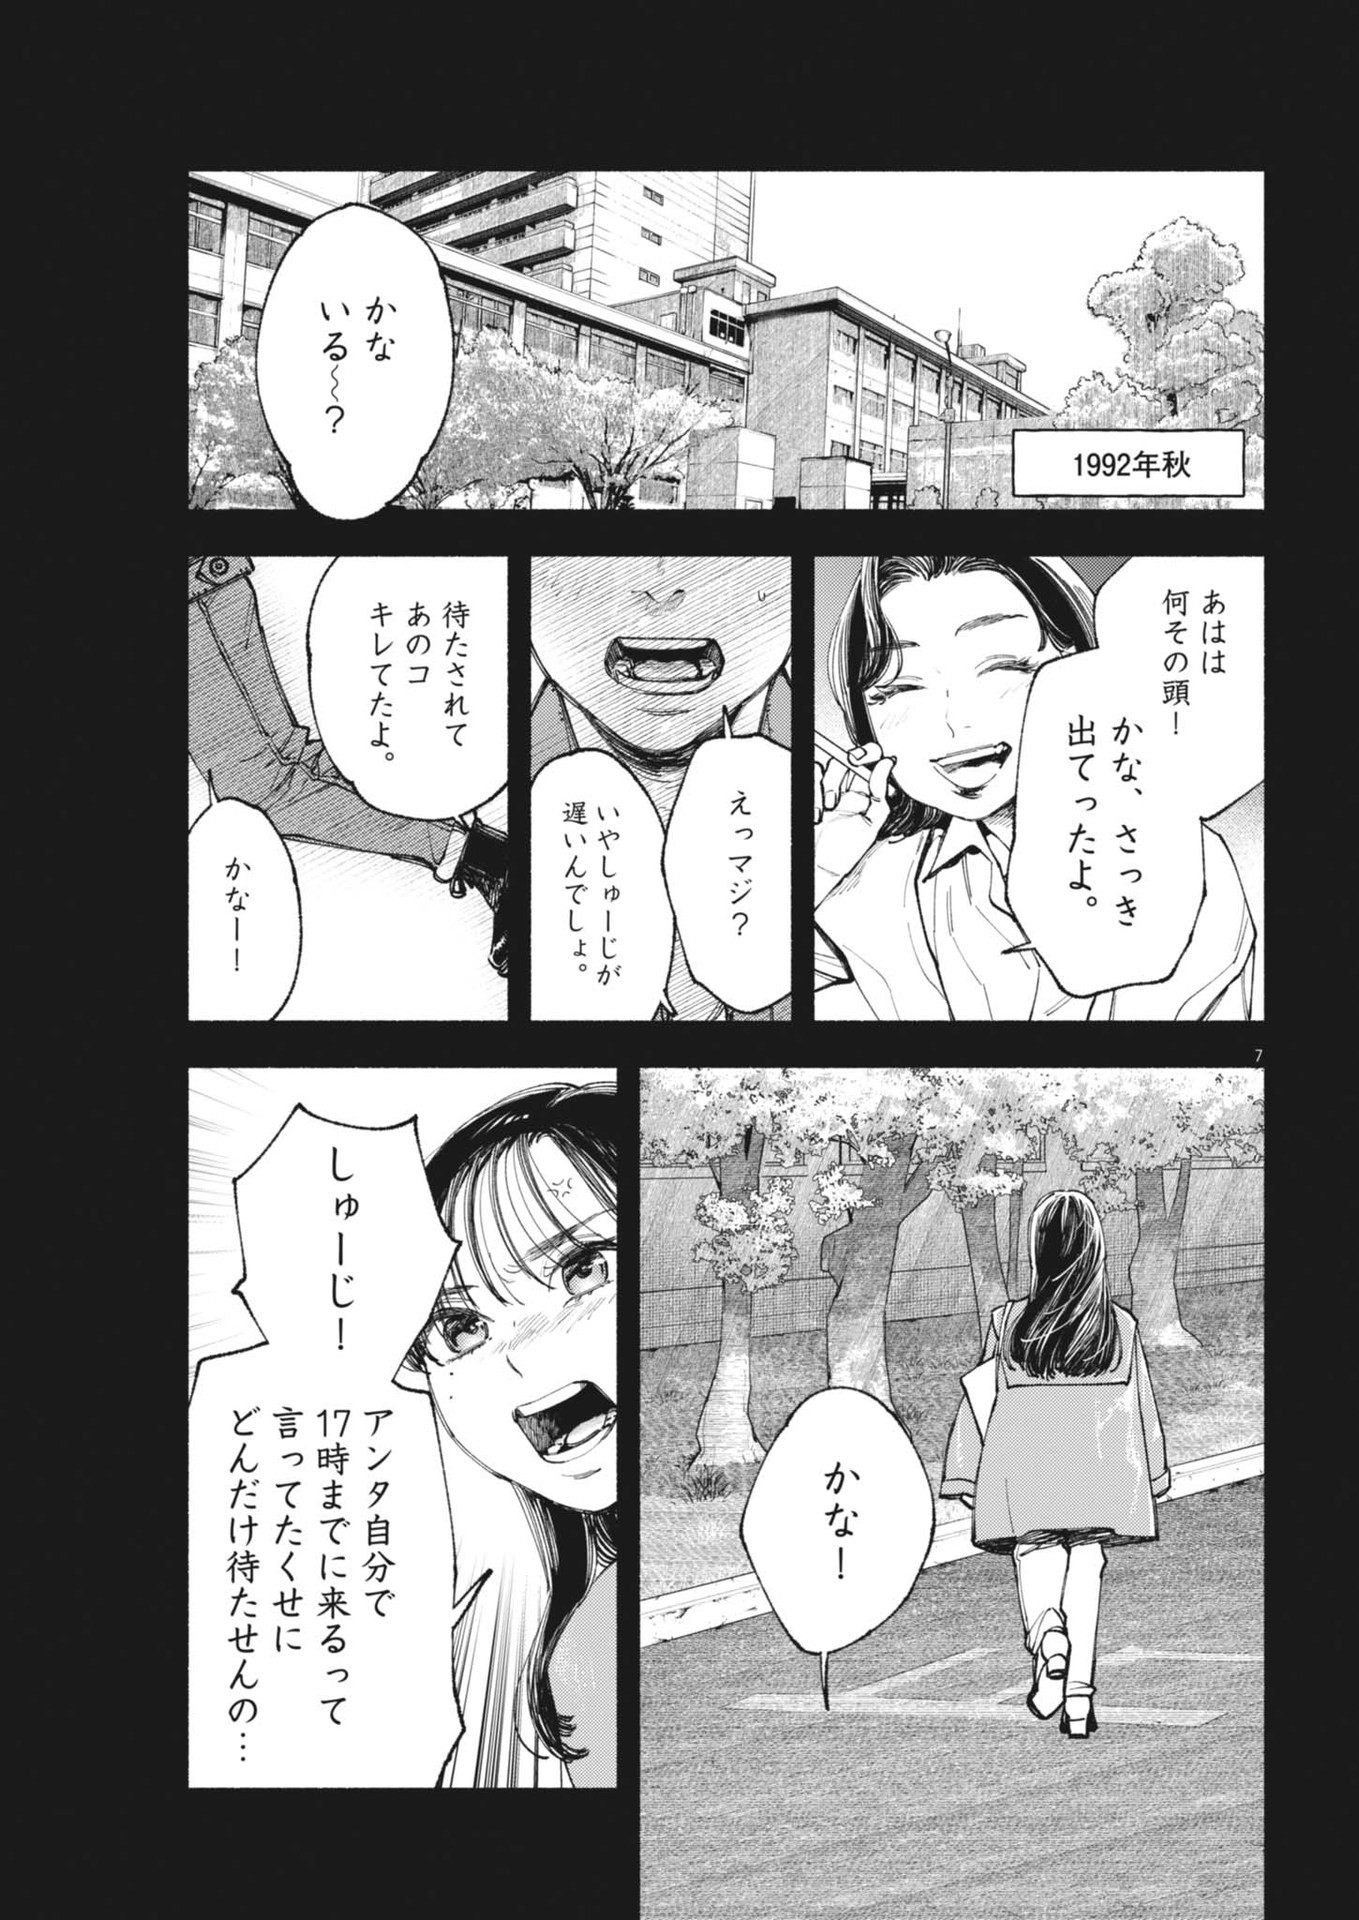 Konoyo wa Tatakau Kachi ga Aru  - Chapter 26 - Page 7